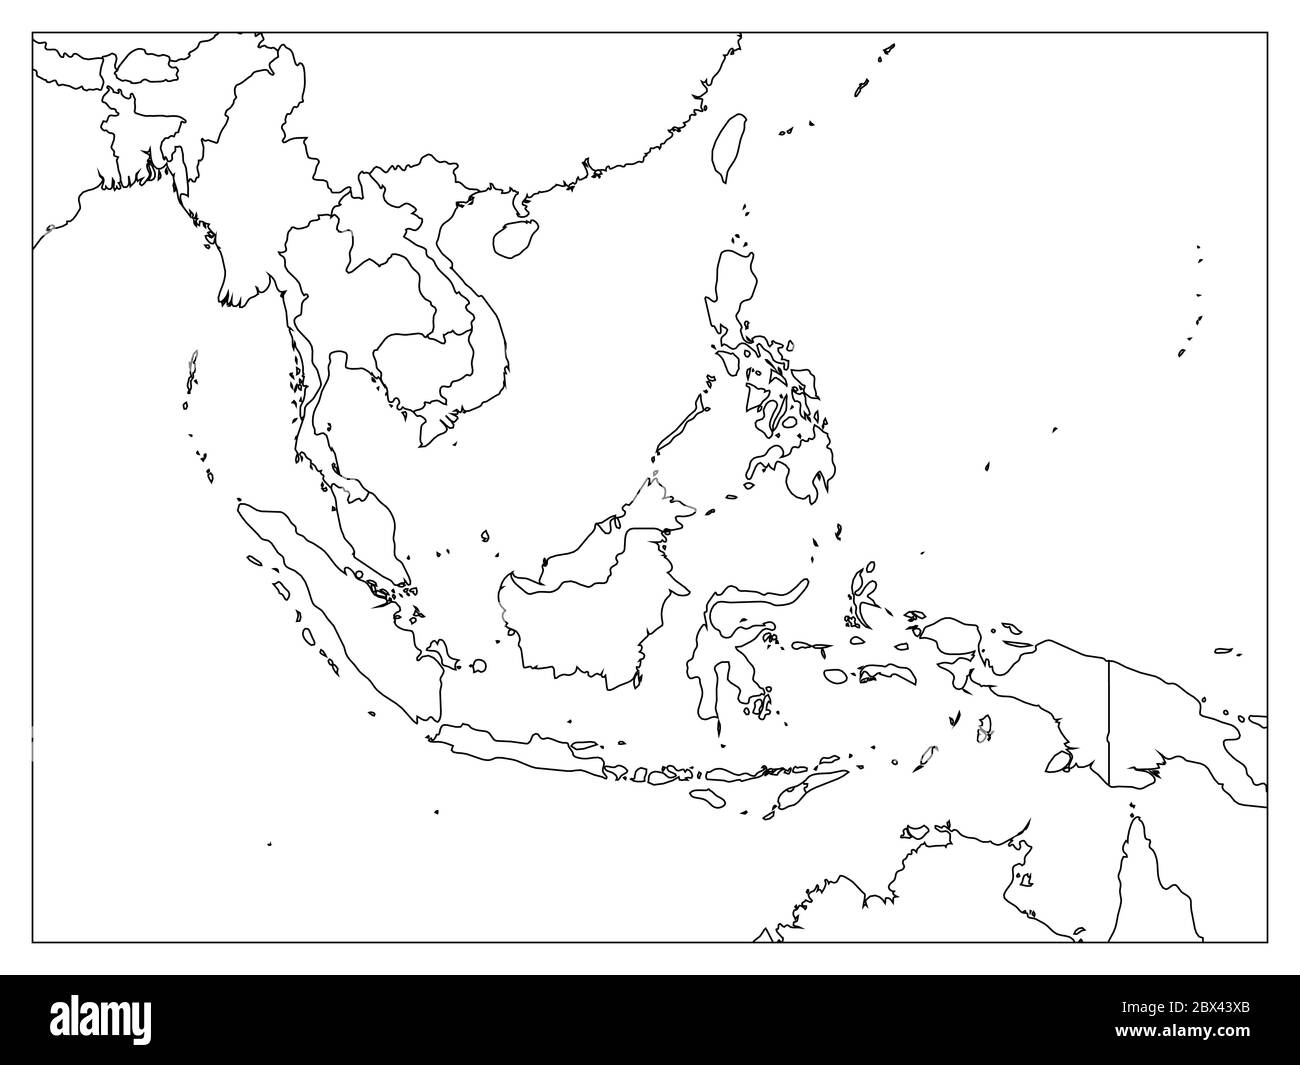 Carte politique de l'Asie du Sud-est. Contour noir sur fond blanc avec des étiquettes de nom de pays noires. Illustration simple à vecteur plat. Illustration de Vecteur